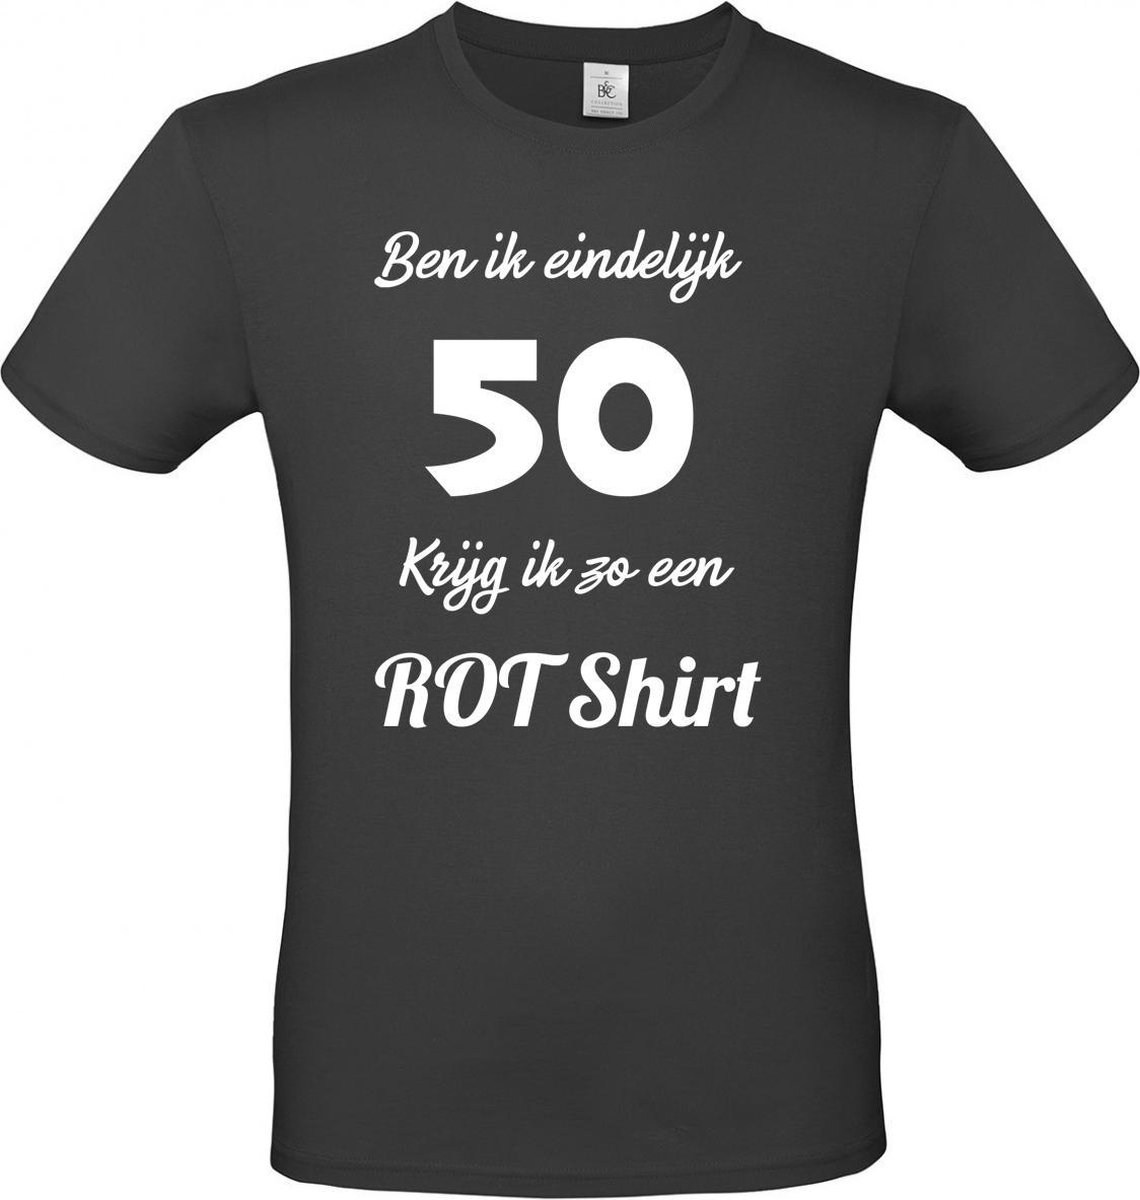 T-shirt met opdruk “Ben ik eindelijk 50 krijg ik zo een rotshirt”, cadeautje voor Abraham of Sarah